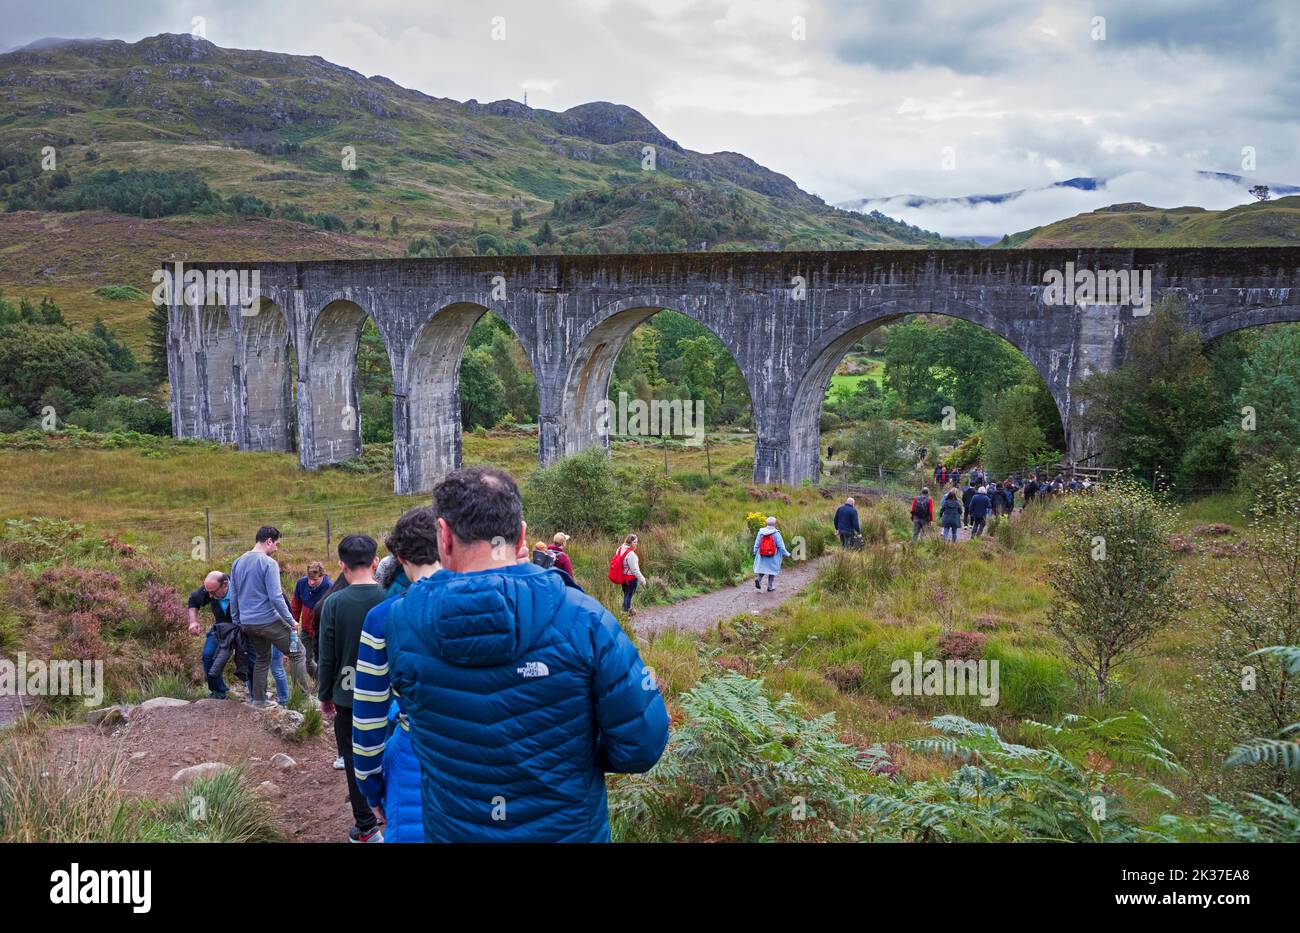 Los turistas salen de la colina sobre el viaducto de Glenifinnan, Lochaber, Scottish Highlands, Escocia, Reino Unido Foto de stock